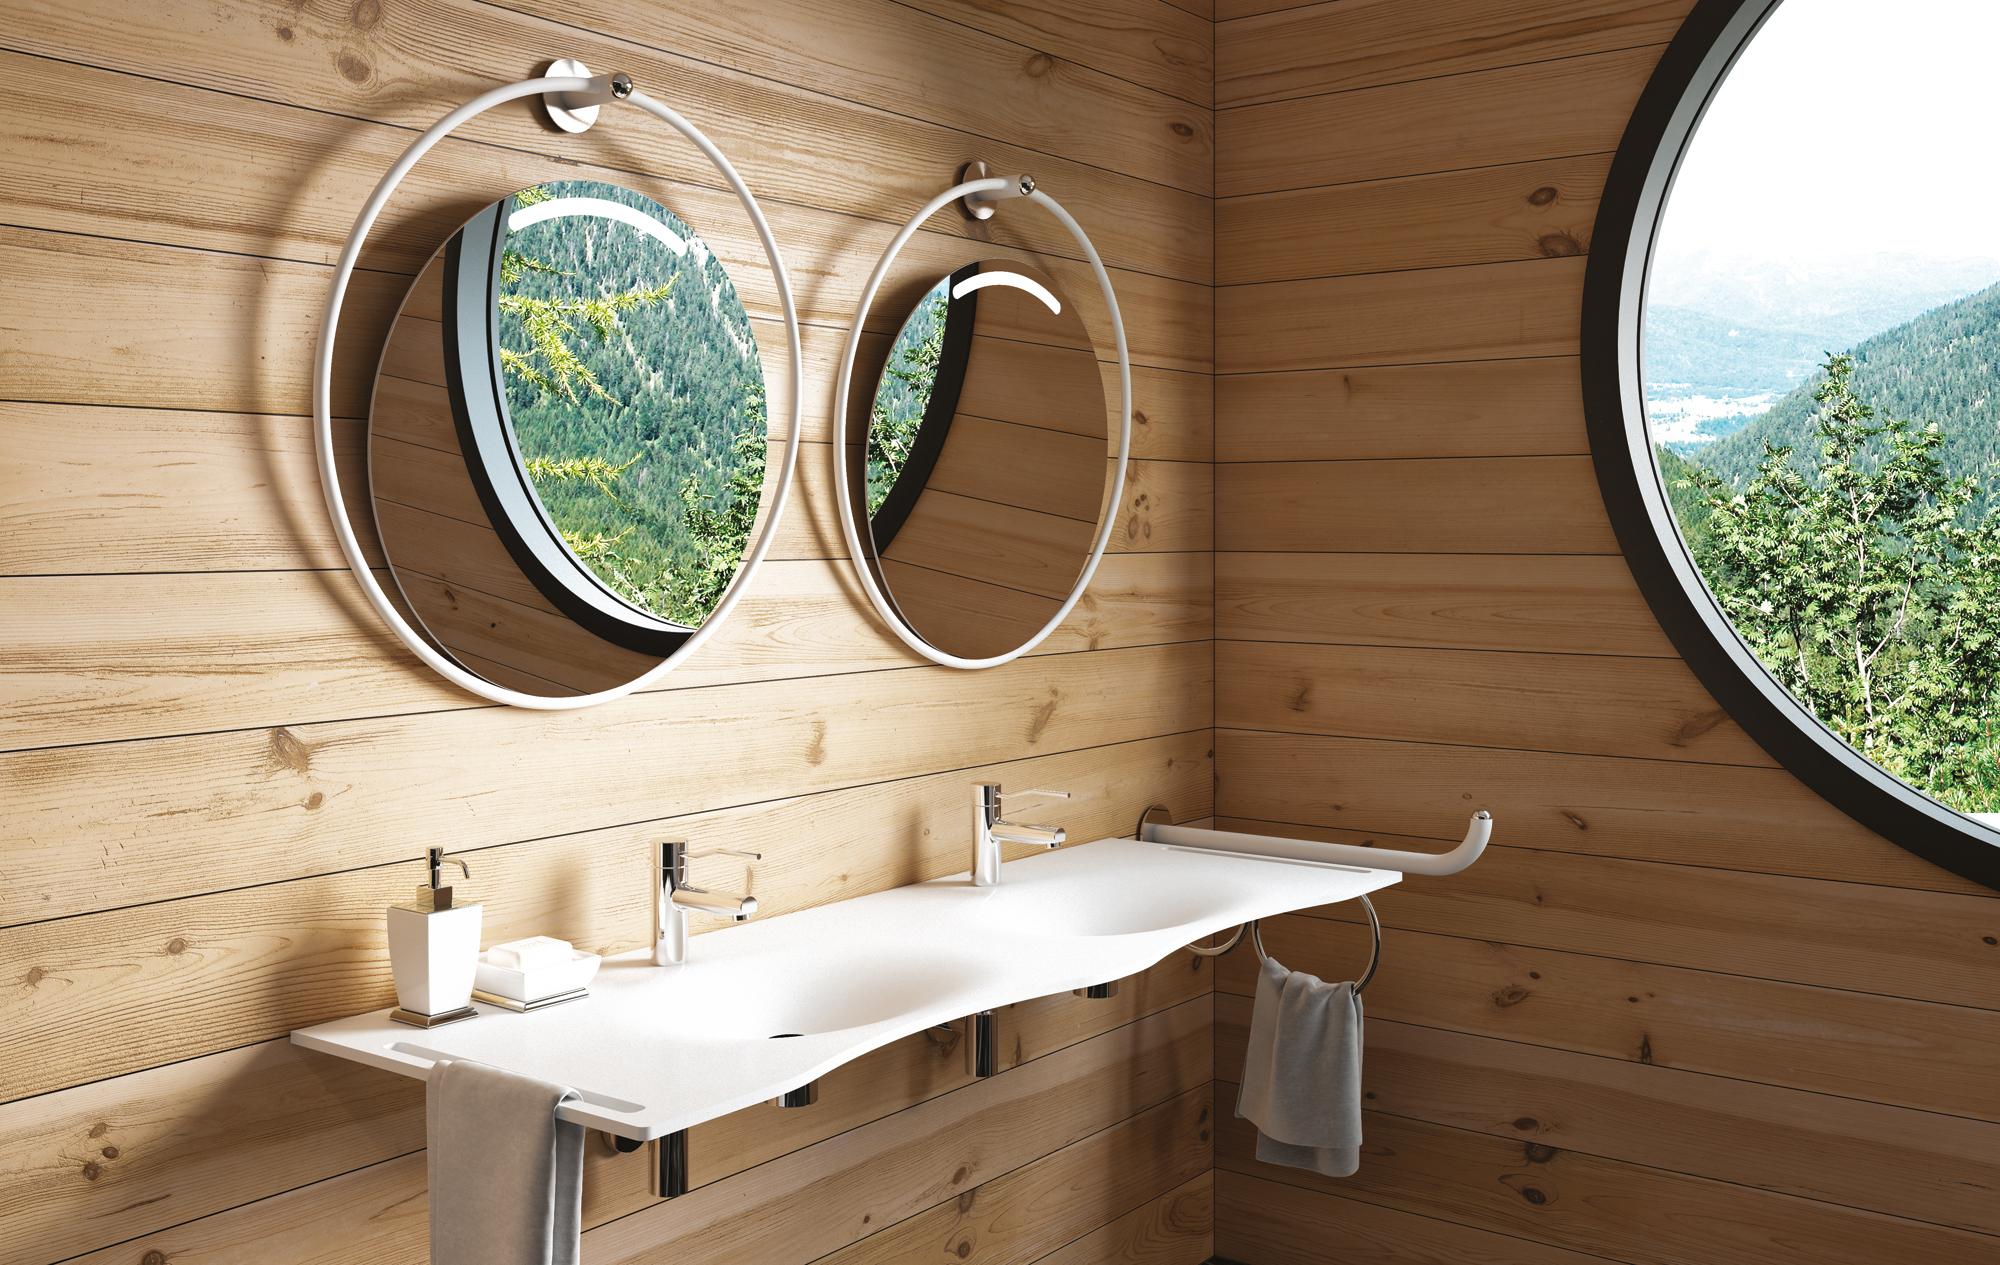 Goman Giotto Design-Wanspiegel für Badezimmer, Spiegelglas und Edelstahl - Durchmesser 60cm #bad #waschtisch ©goman